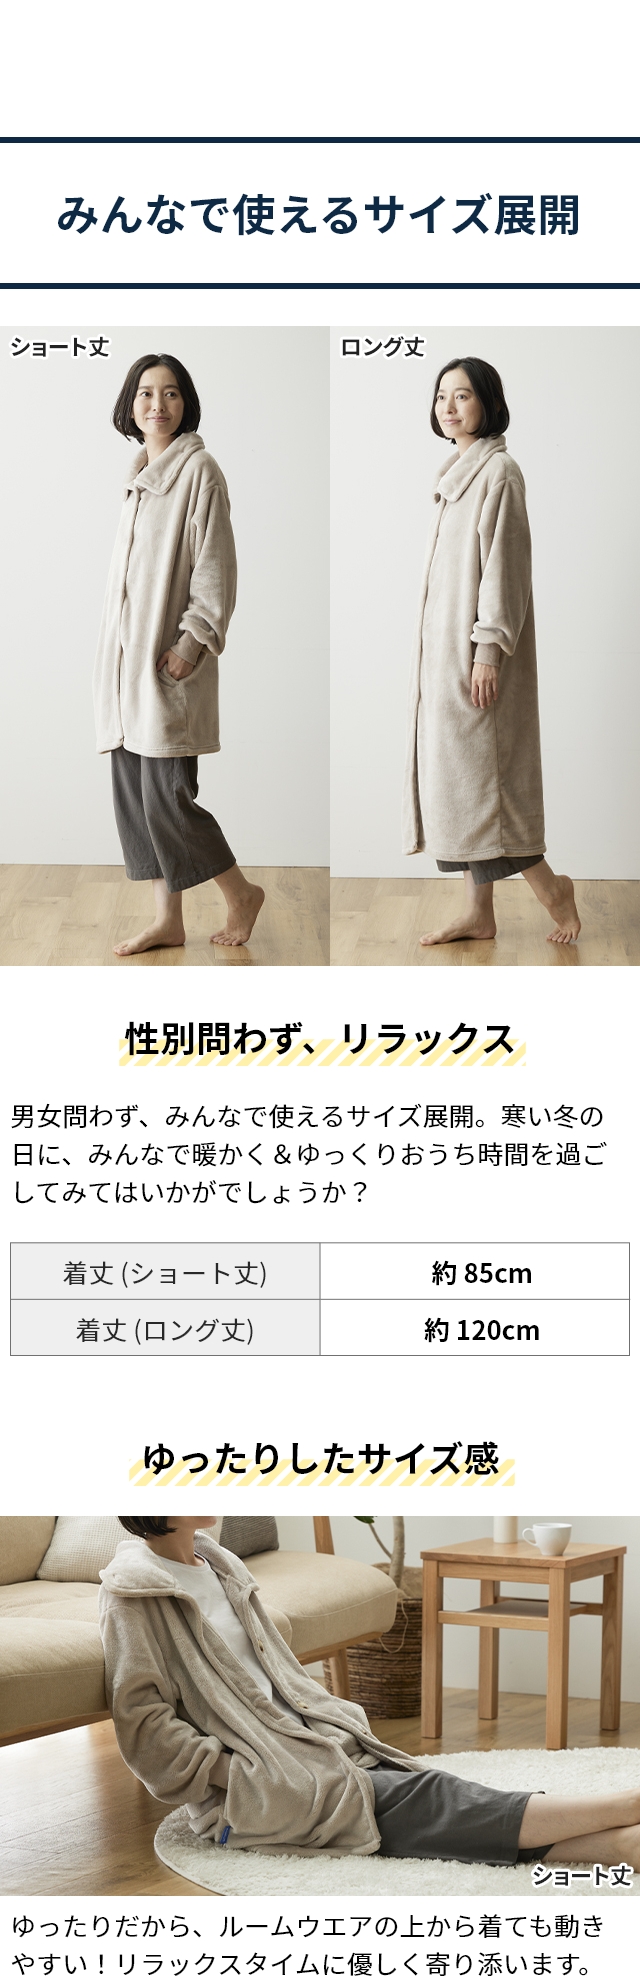 mofua (モフア) プレミアムマイクロファイバー 着る毛布 3wayハイネックタイプ FJ ロング丈120cm